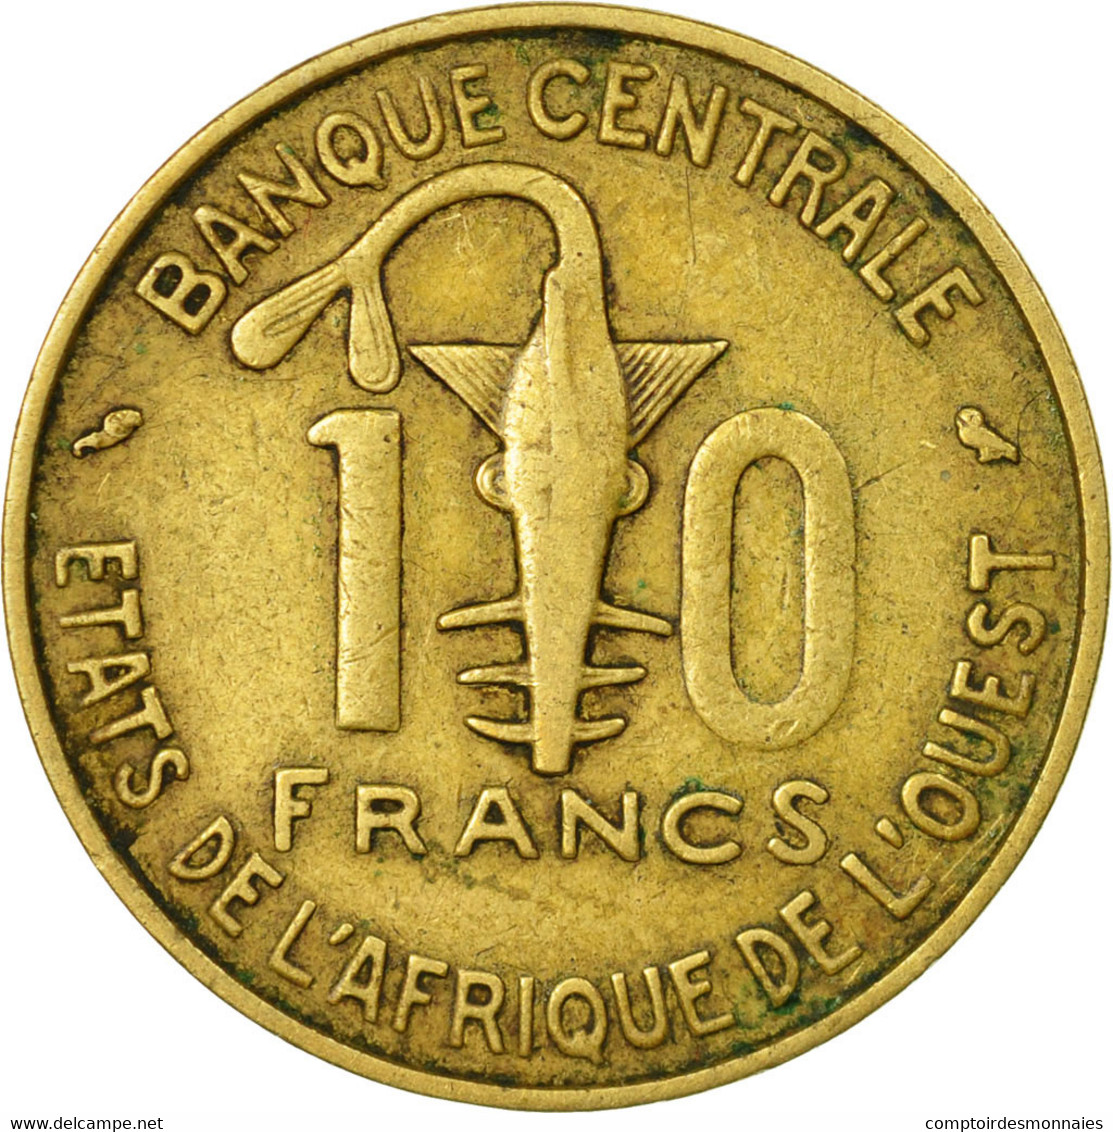 Monnaie, West African States, 10 Francs, 1969, Paris, TB+ - Côte-d'Ivoire